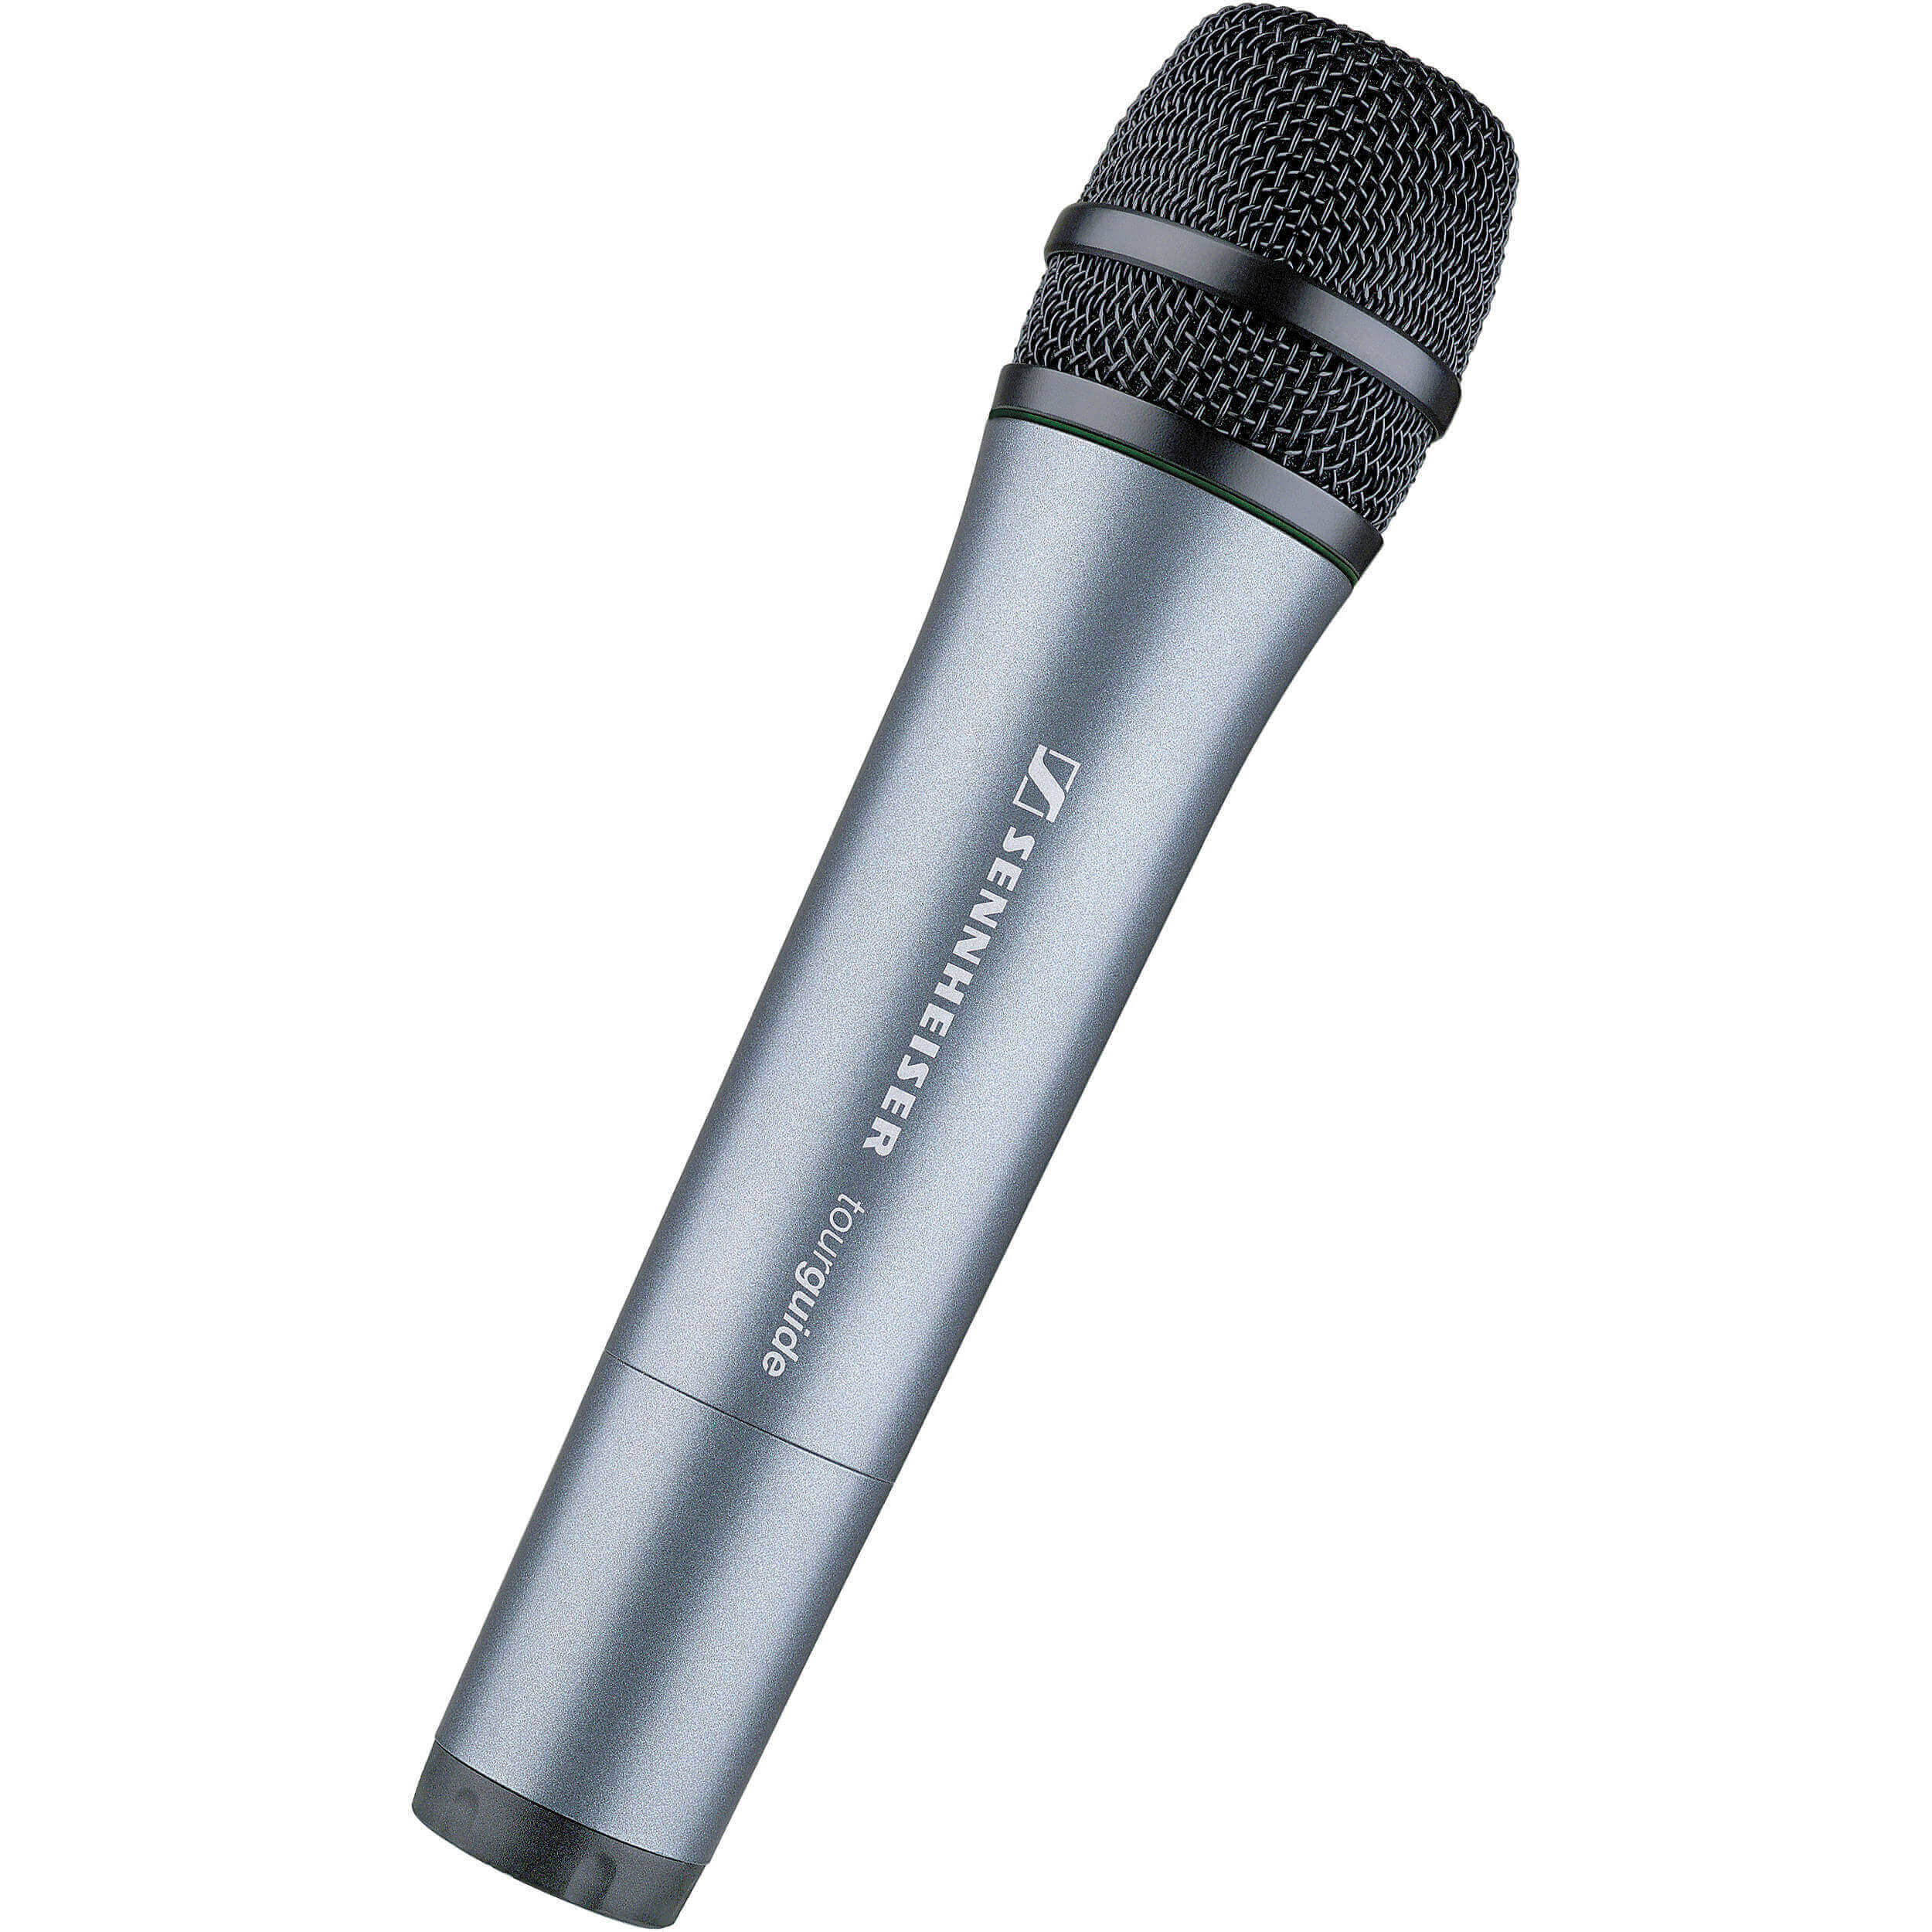 Sennheiser skm 2020-D transmisor de micrófono de mano